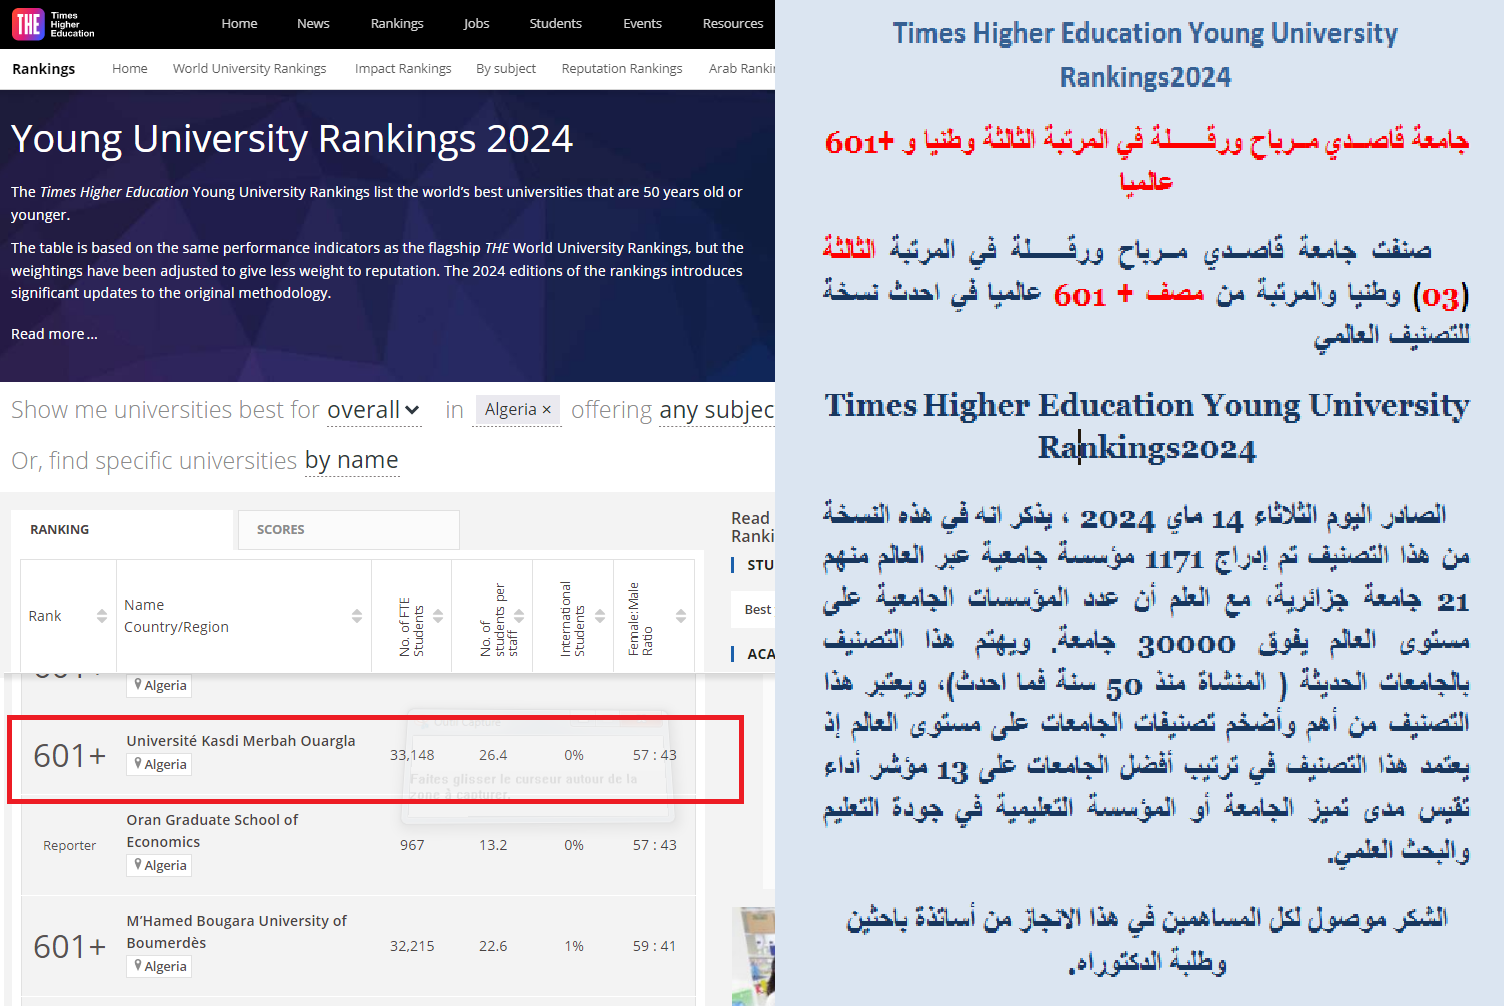 تصنيف جامعة قاصــدي مــرباح ورقــــــلة في المرتبة الثالثة (03) وطنيا والمرتبة من مصف + 601 عالميا في احدث نسخة للتصنيف العالمي